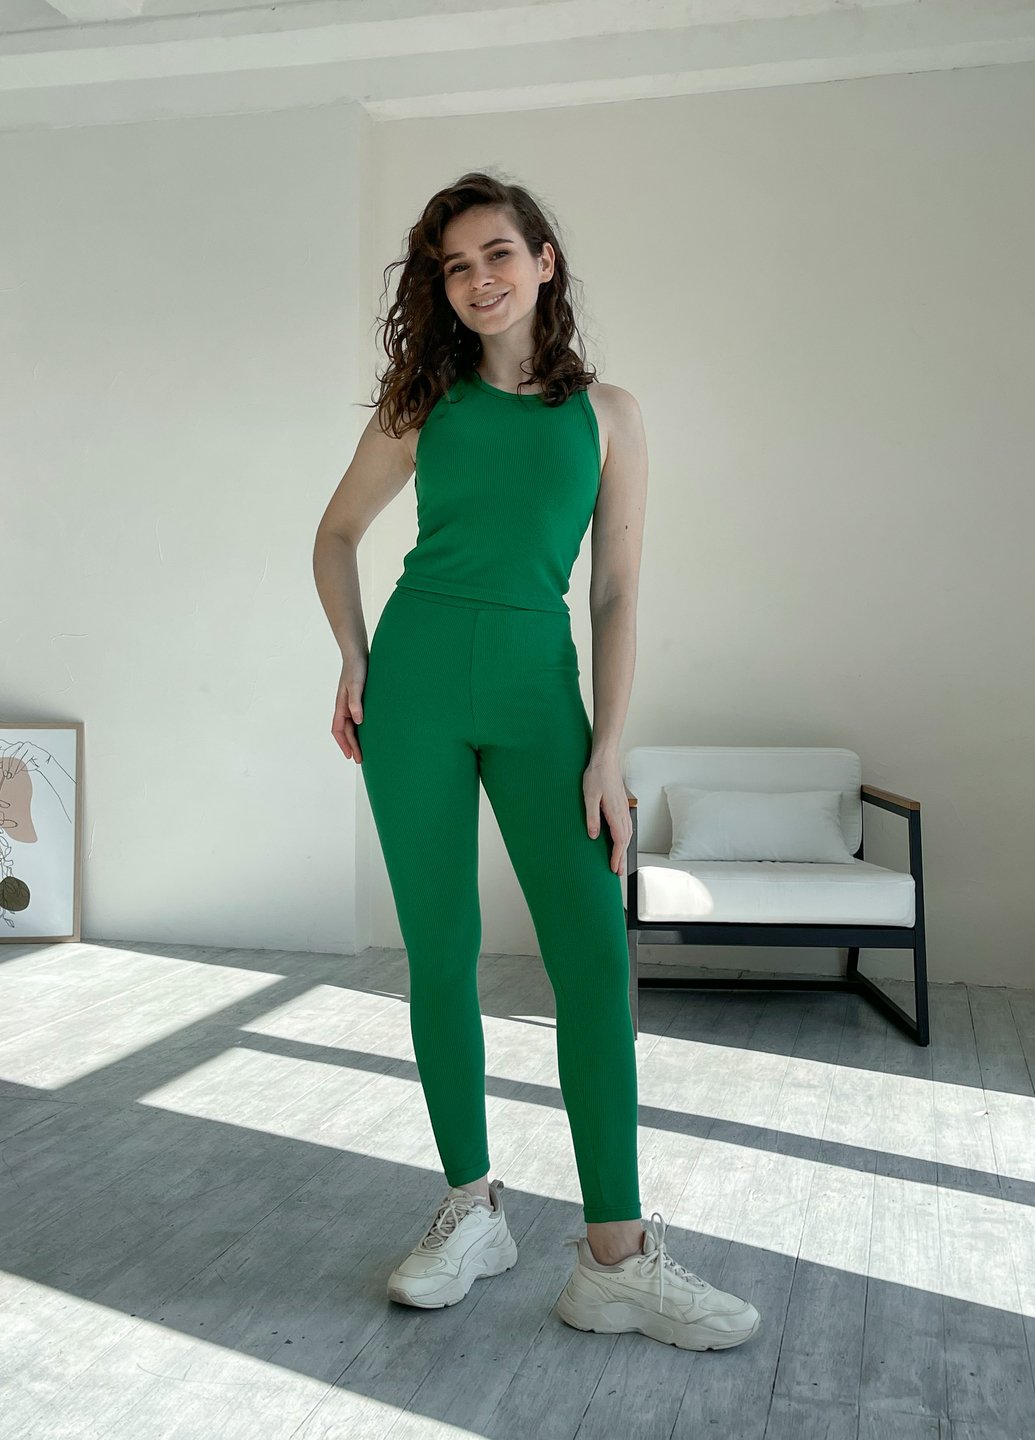 Купить Костюм женский в рубчик топ с лосинами зеленый Merlini Сотто 100000449, размер XS-M (40-44) в интернет-магазине